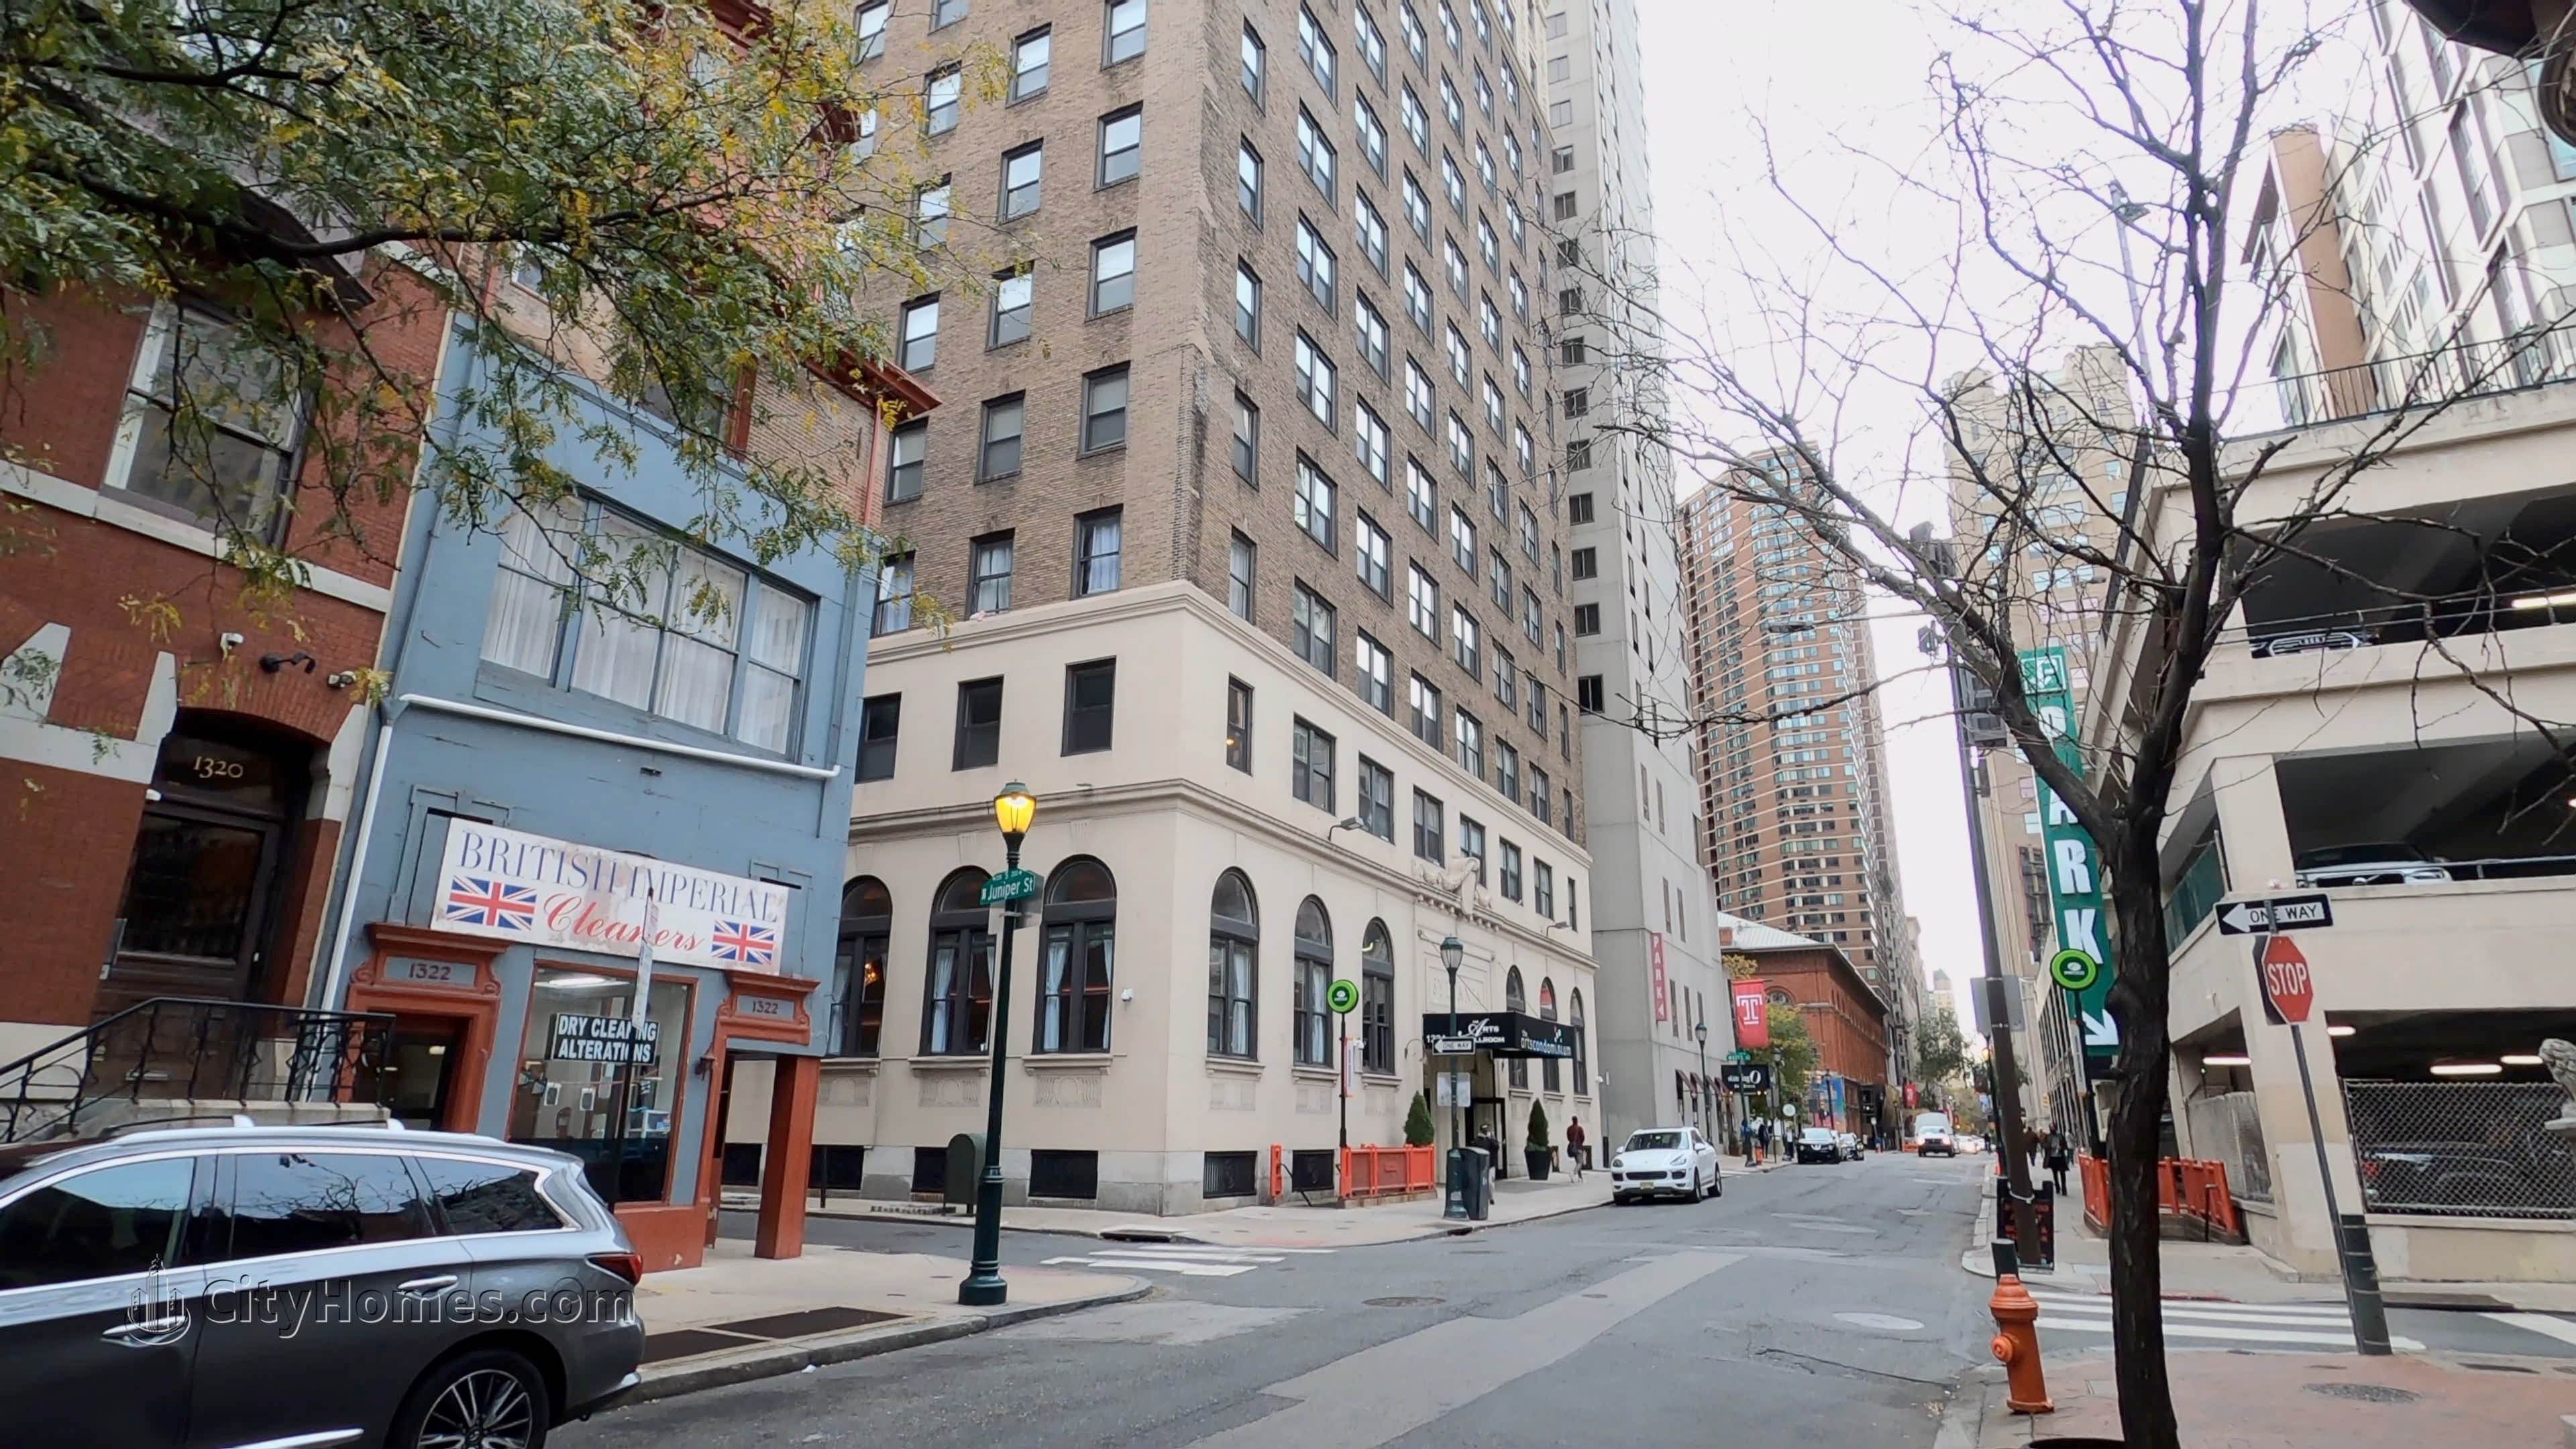 5. The Arts Condominium building at 1324 Locust St, Center City, Philadelphia, PA 19107